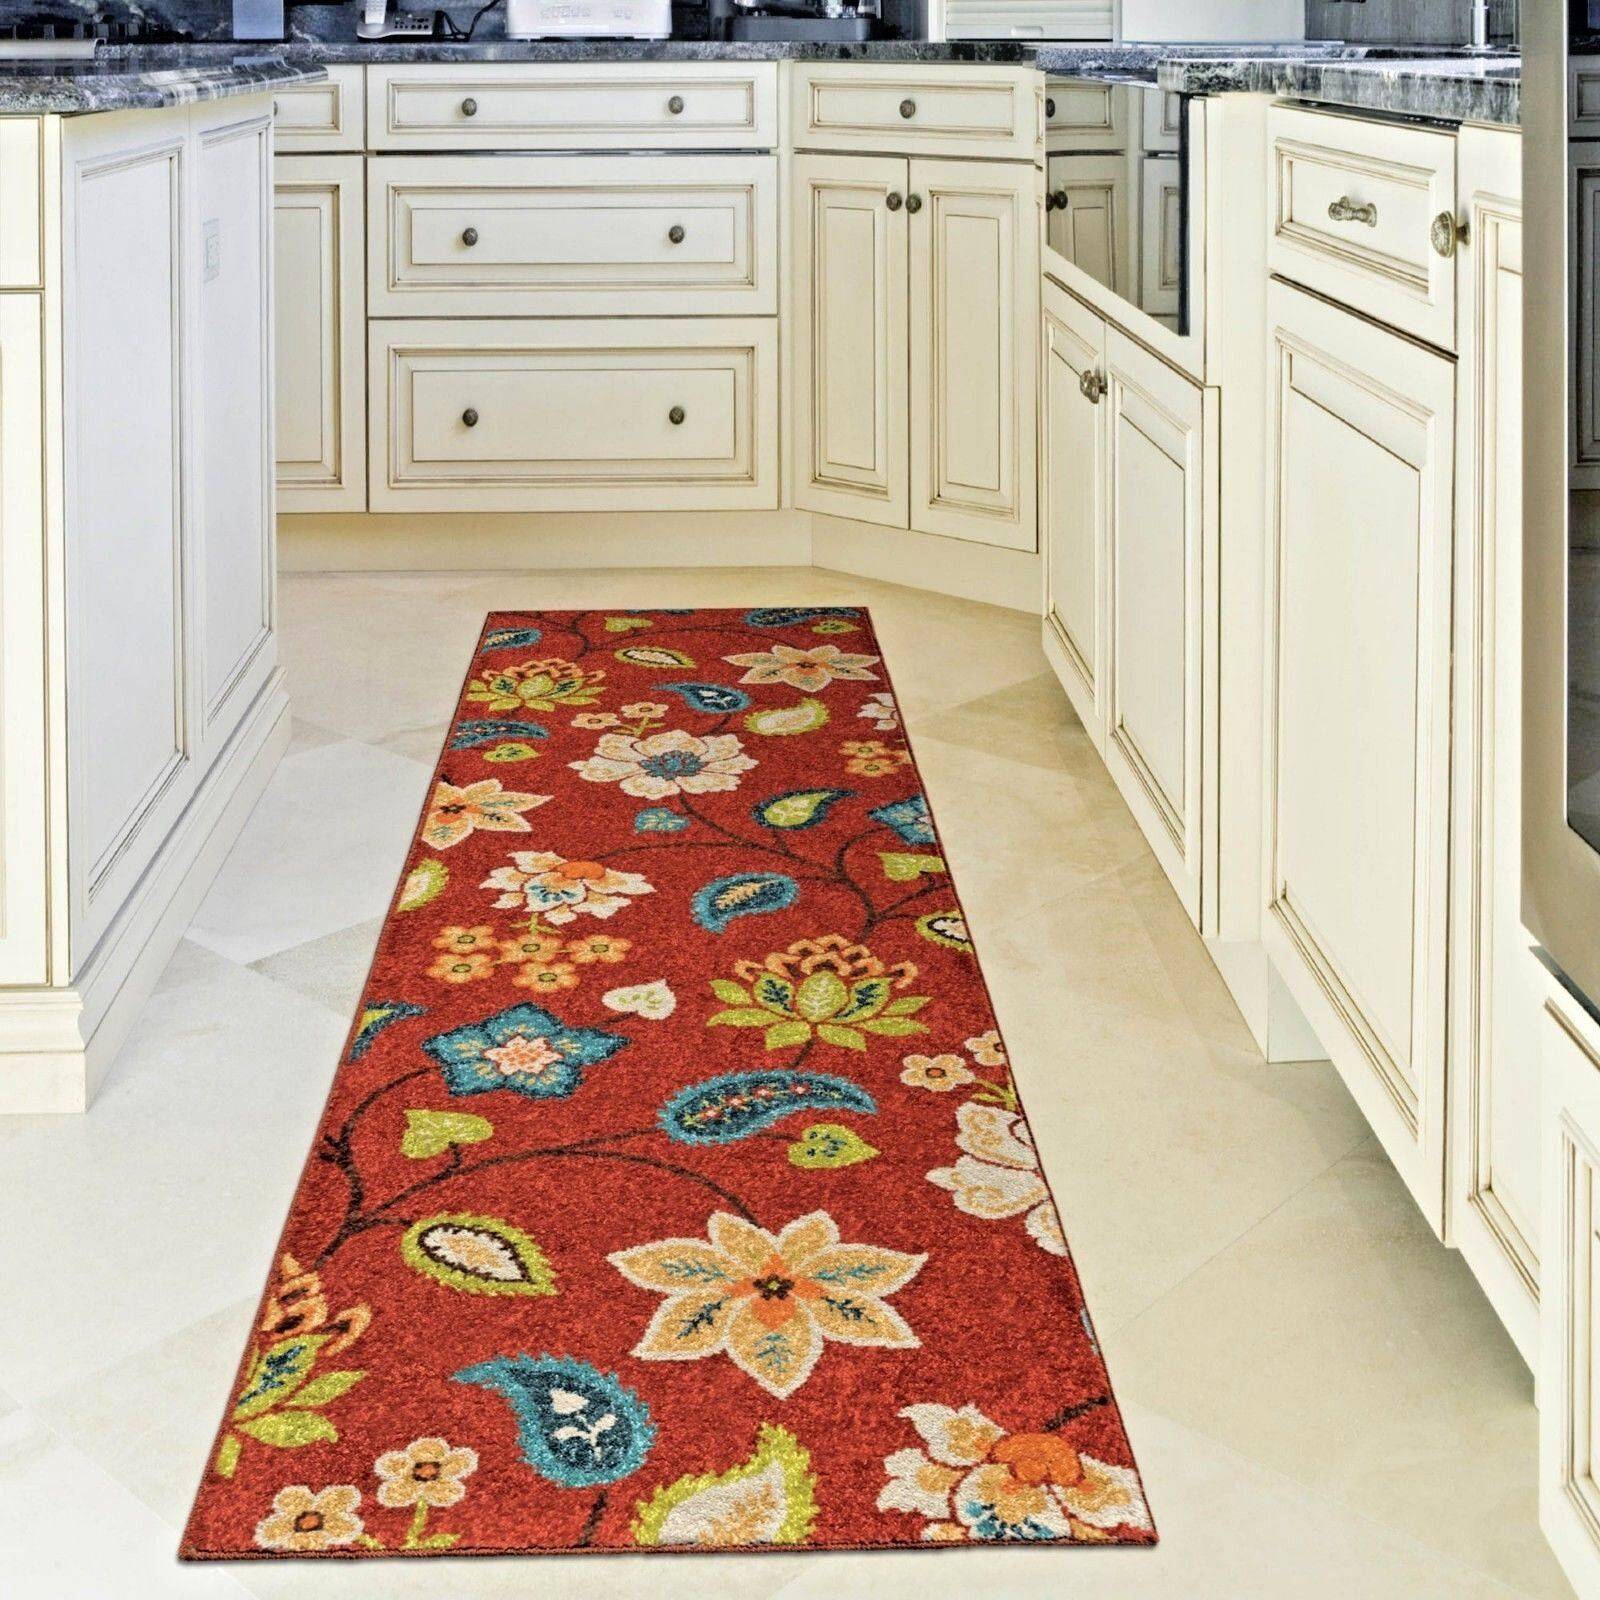 Ковер на кухню: коврик на пол своими руками, палас и ковролин из плитки в рабочую зону, что можно постелить вместо - водонепроницаемые